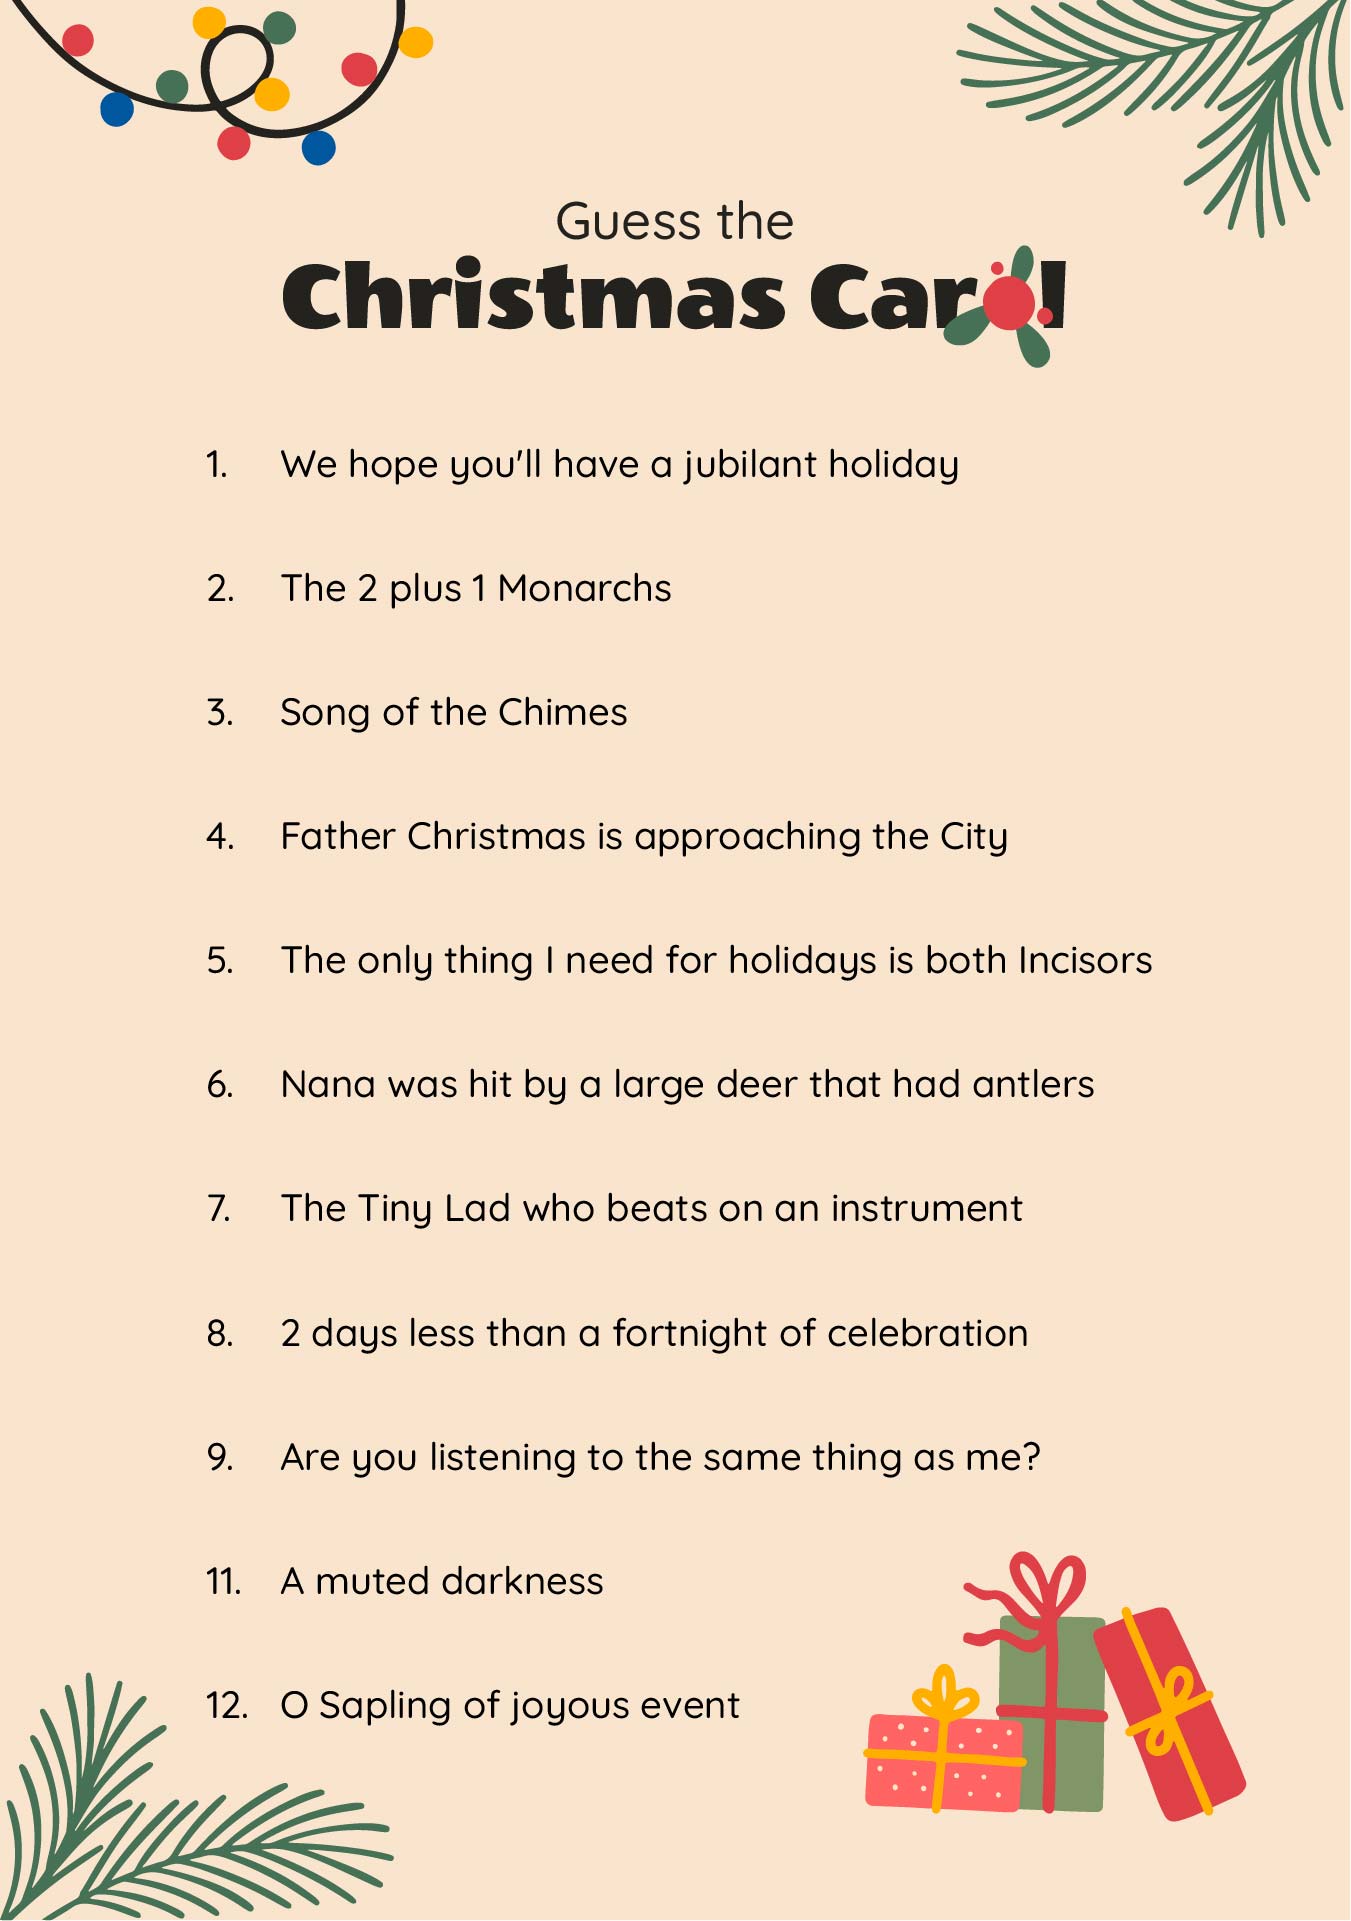 Christmas Carol Games Printable